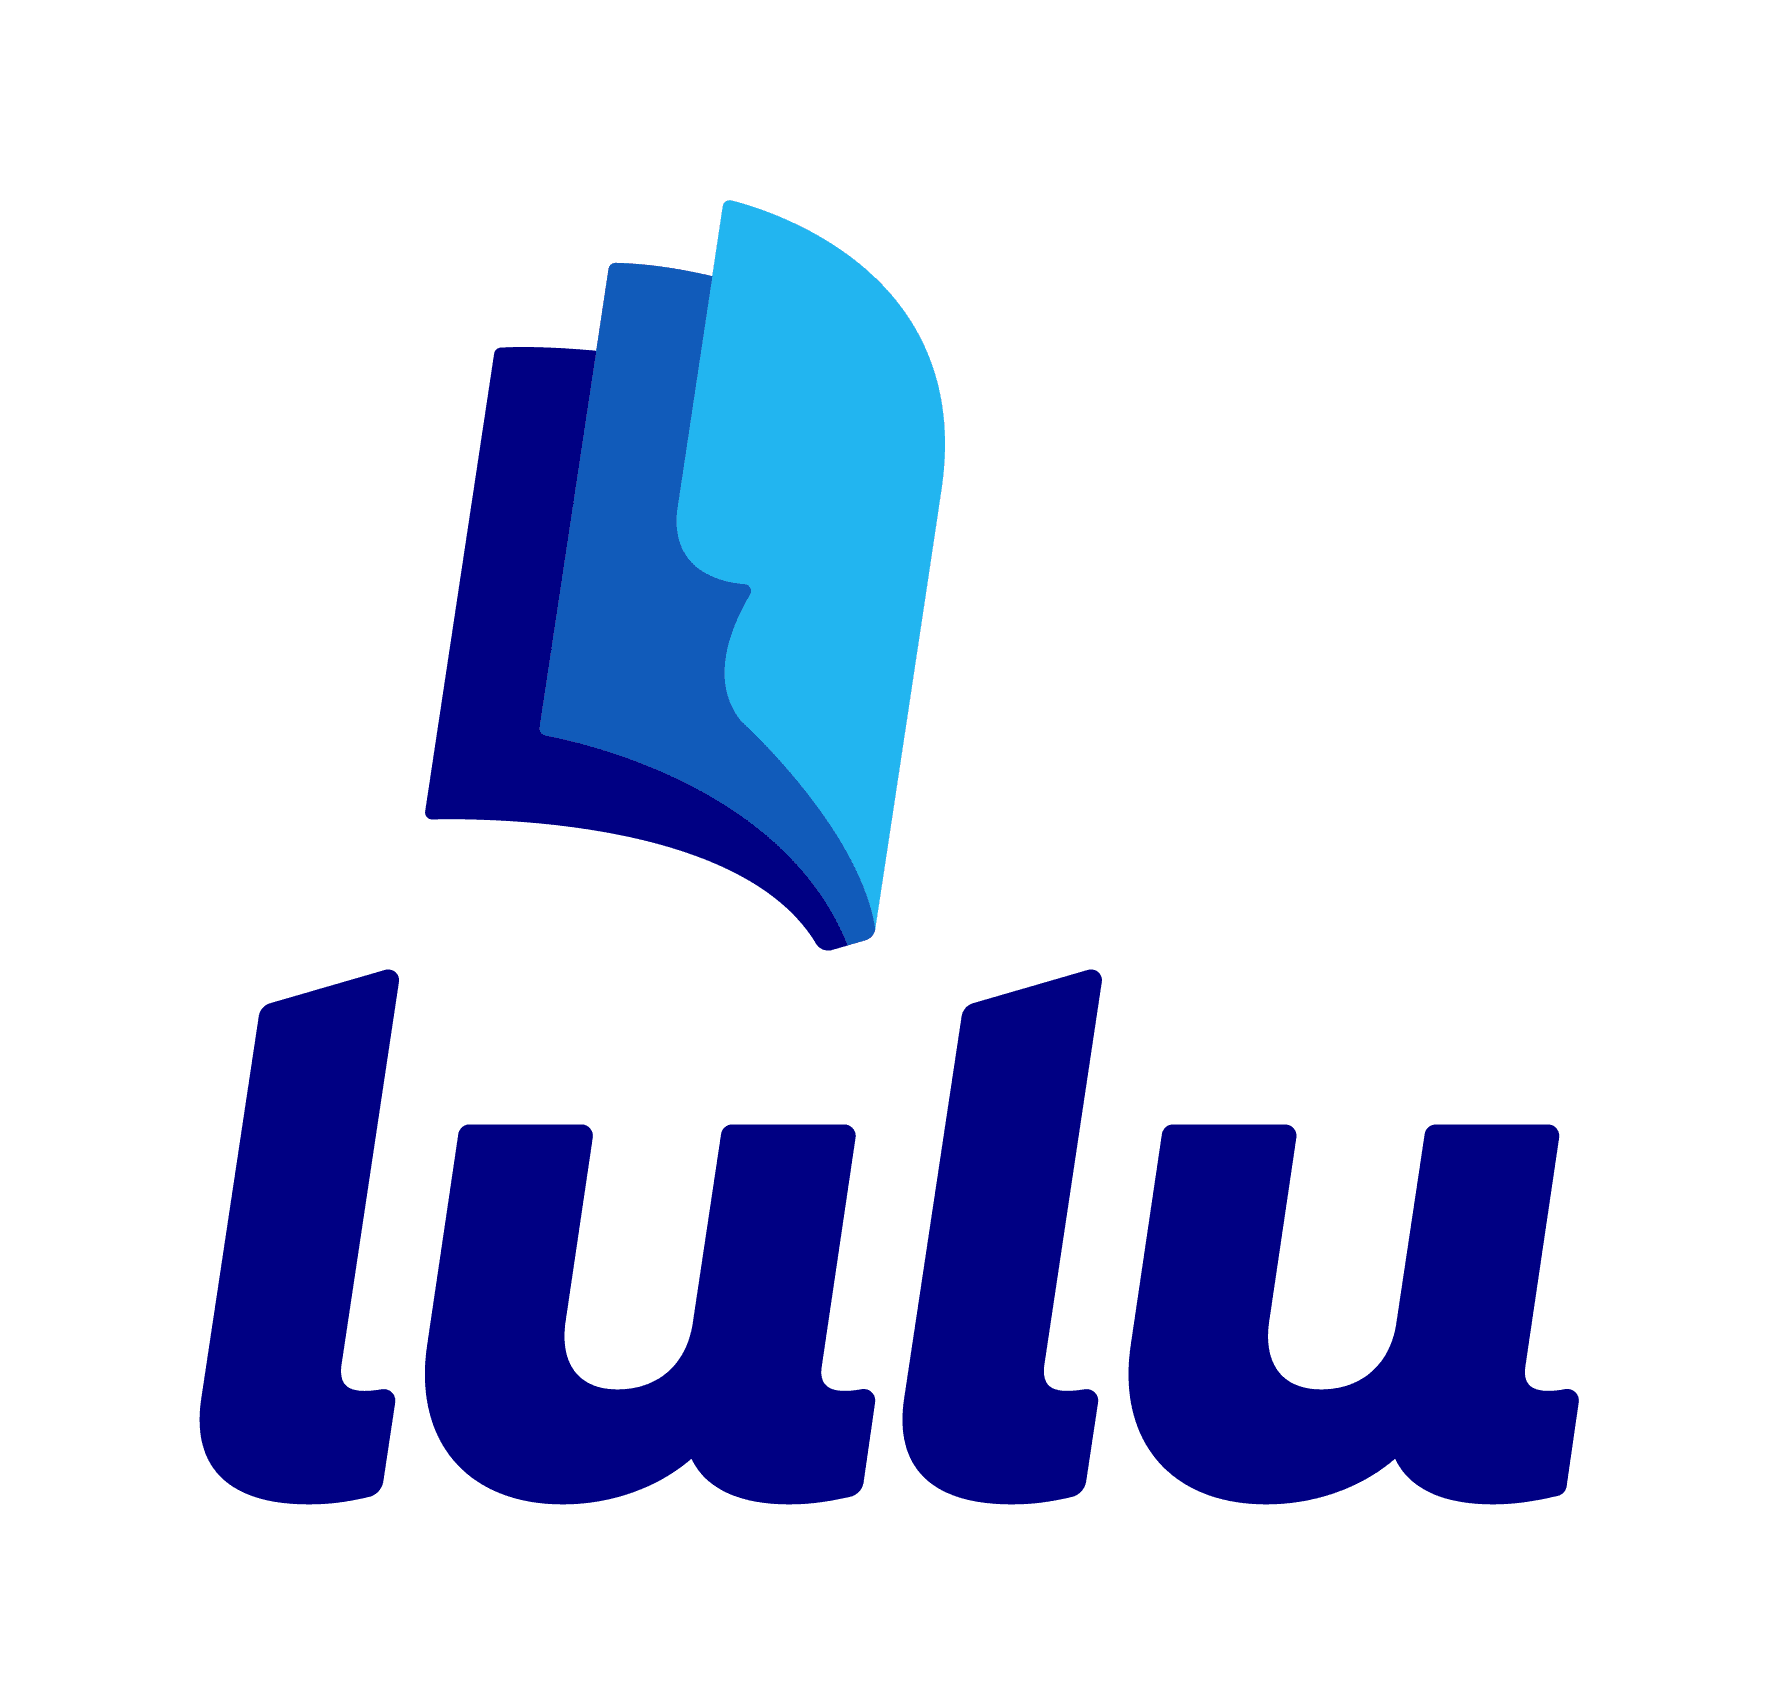 self-publishing on Lulu